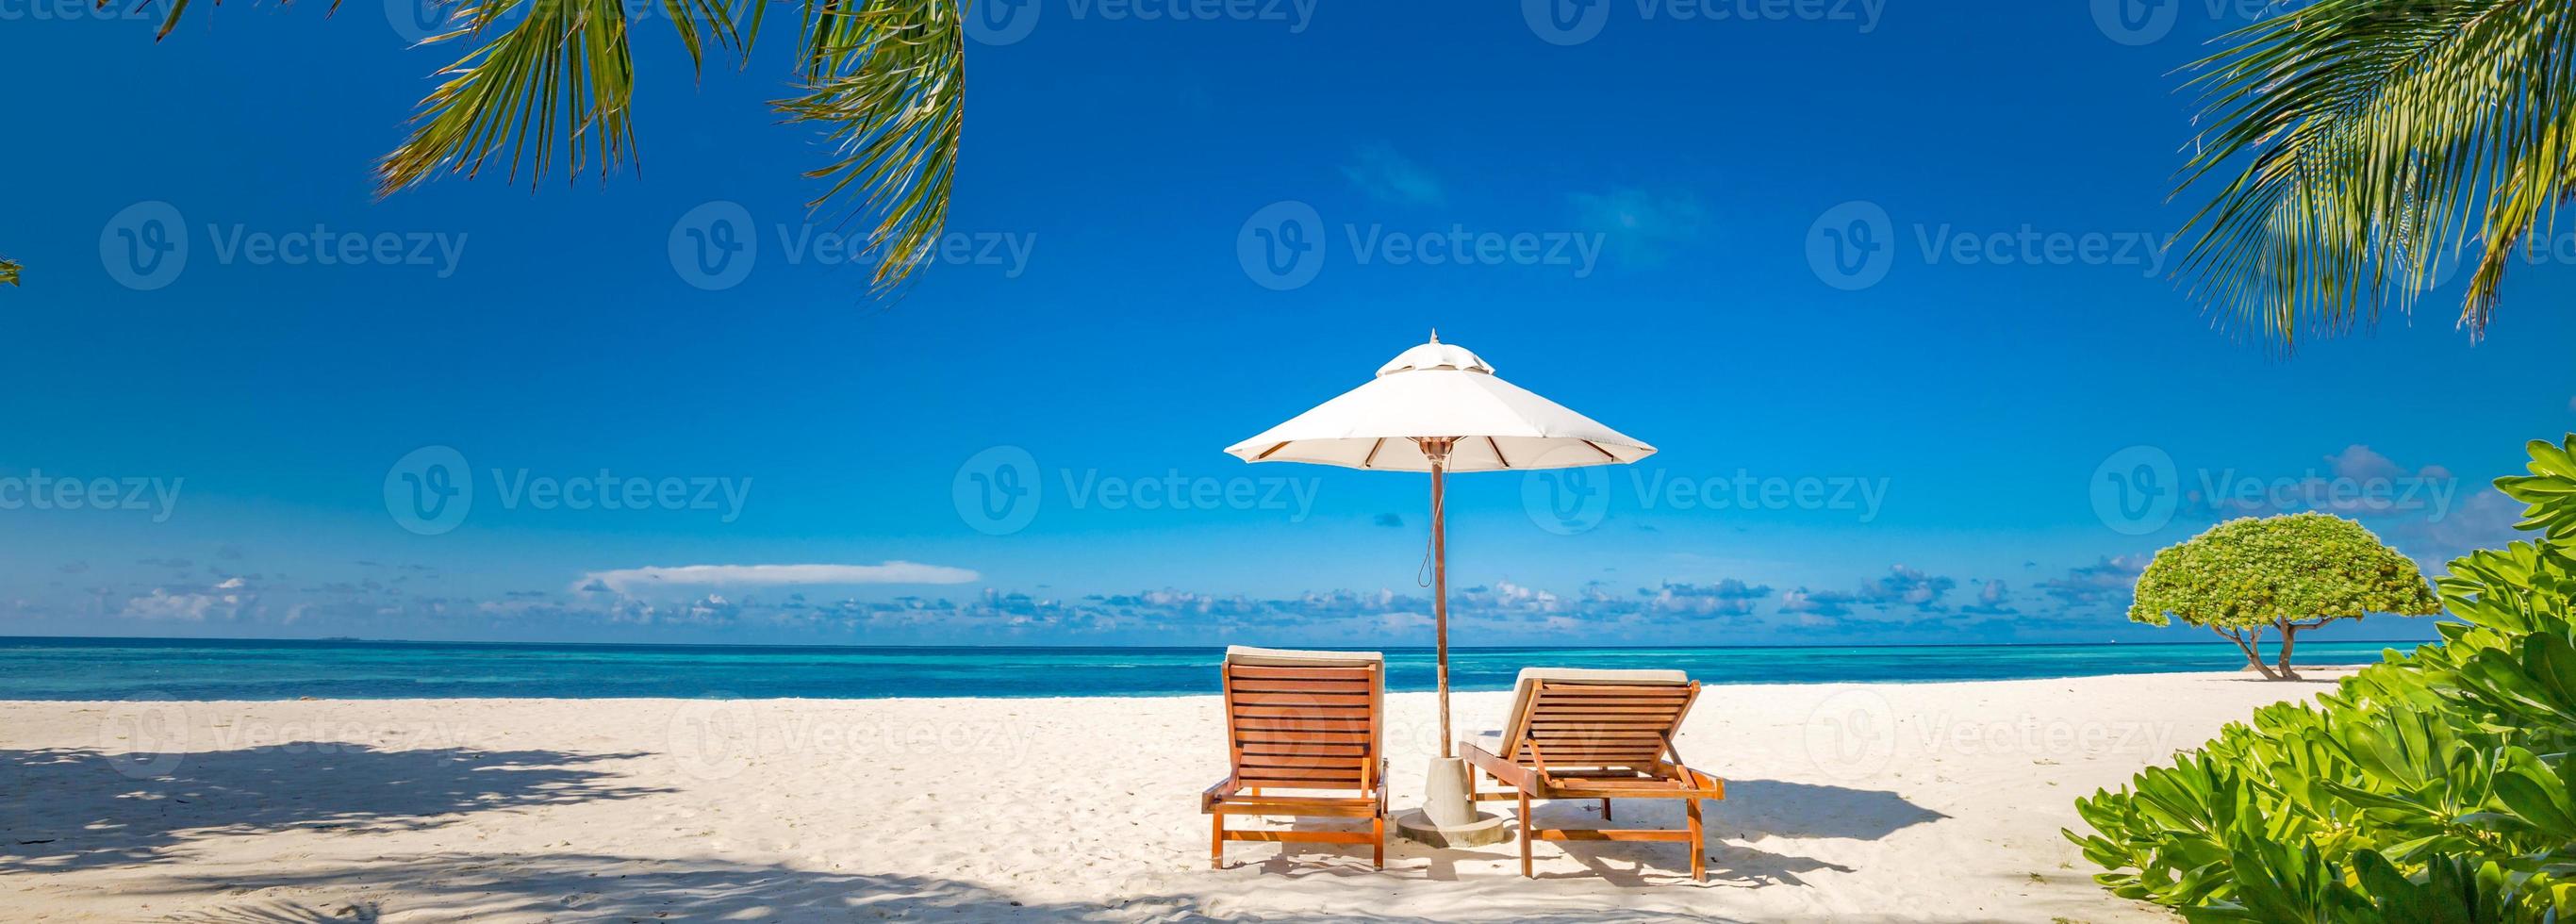 belle bannière de plage tropicale. sable blanc et cocotiers et chaises de plage comme concept d'arrière-plan panoramique large. paysage de plage incroyable, scène romantique pour les destinations de voyage en couple ou en lune de miel photo